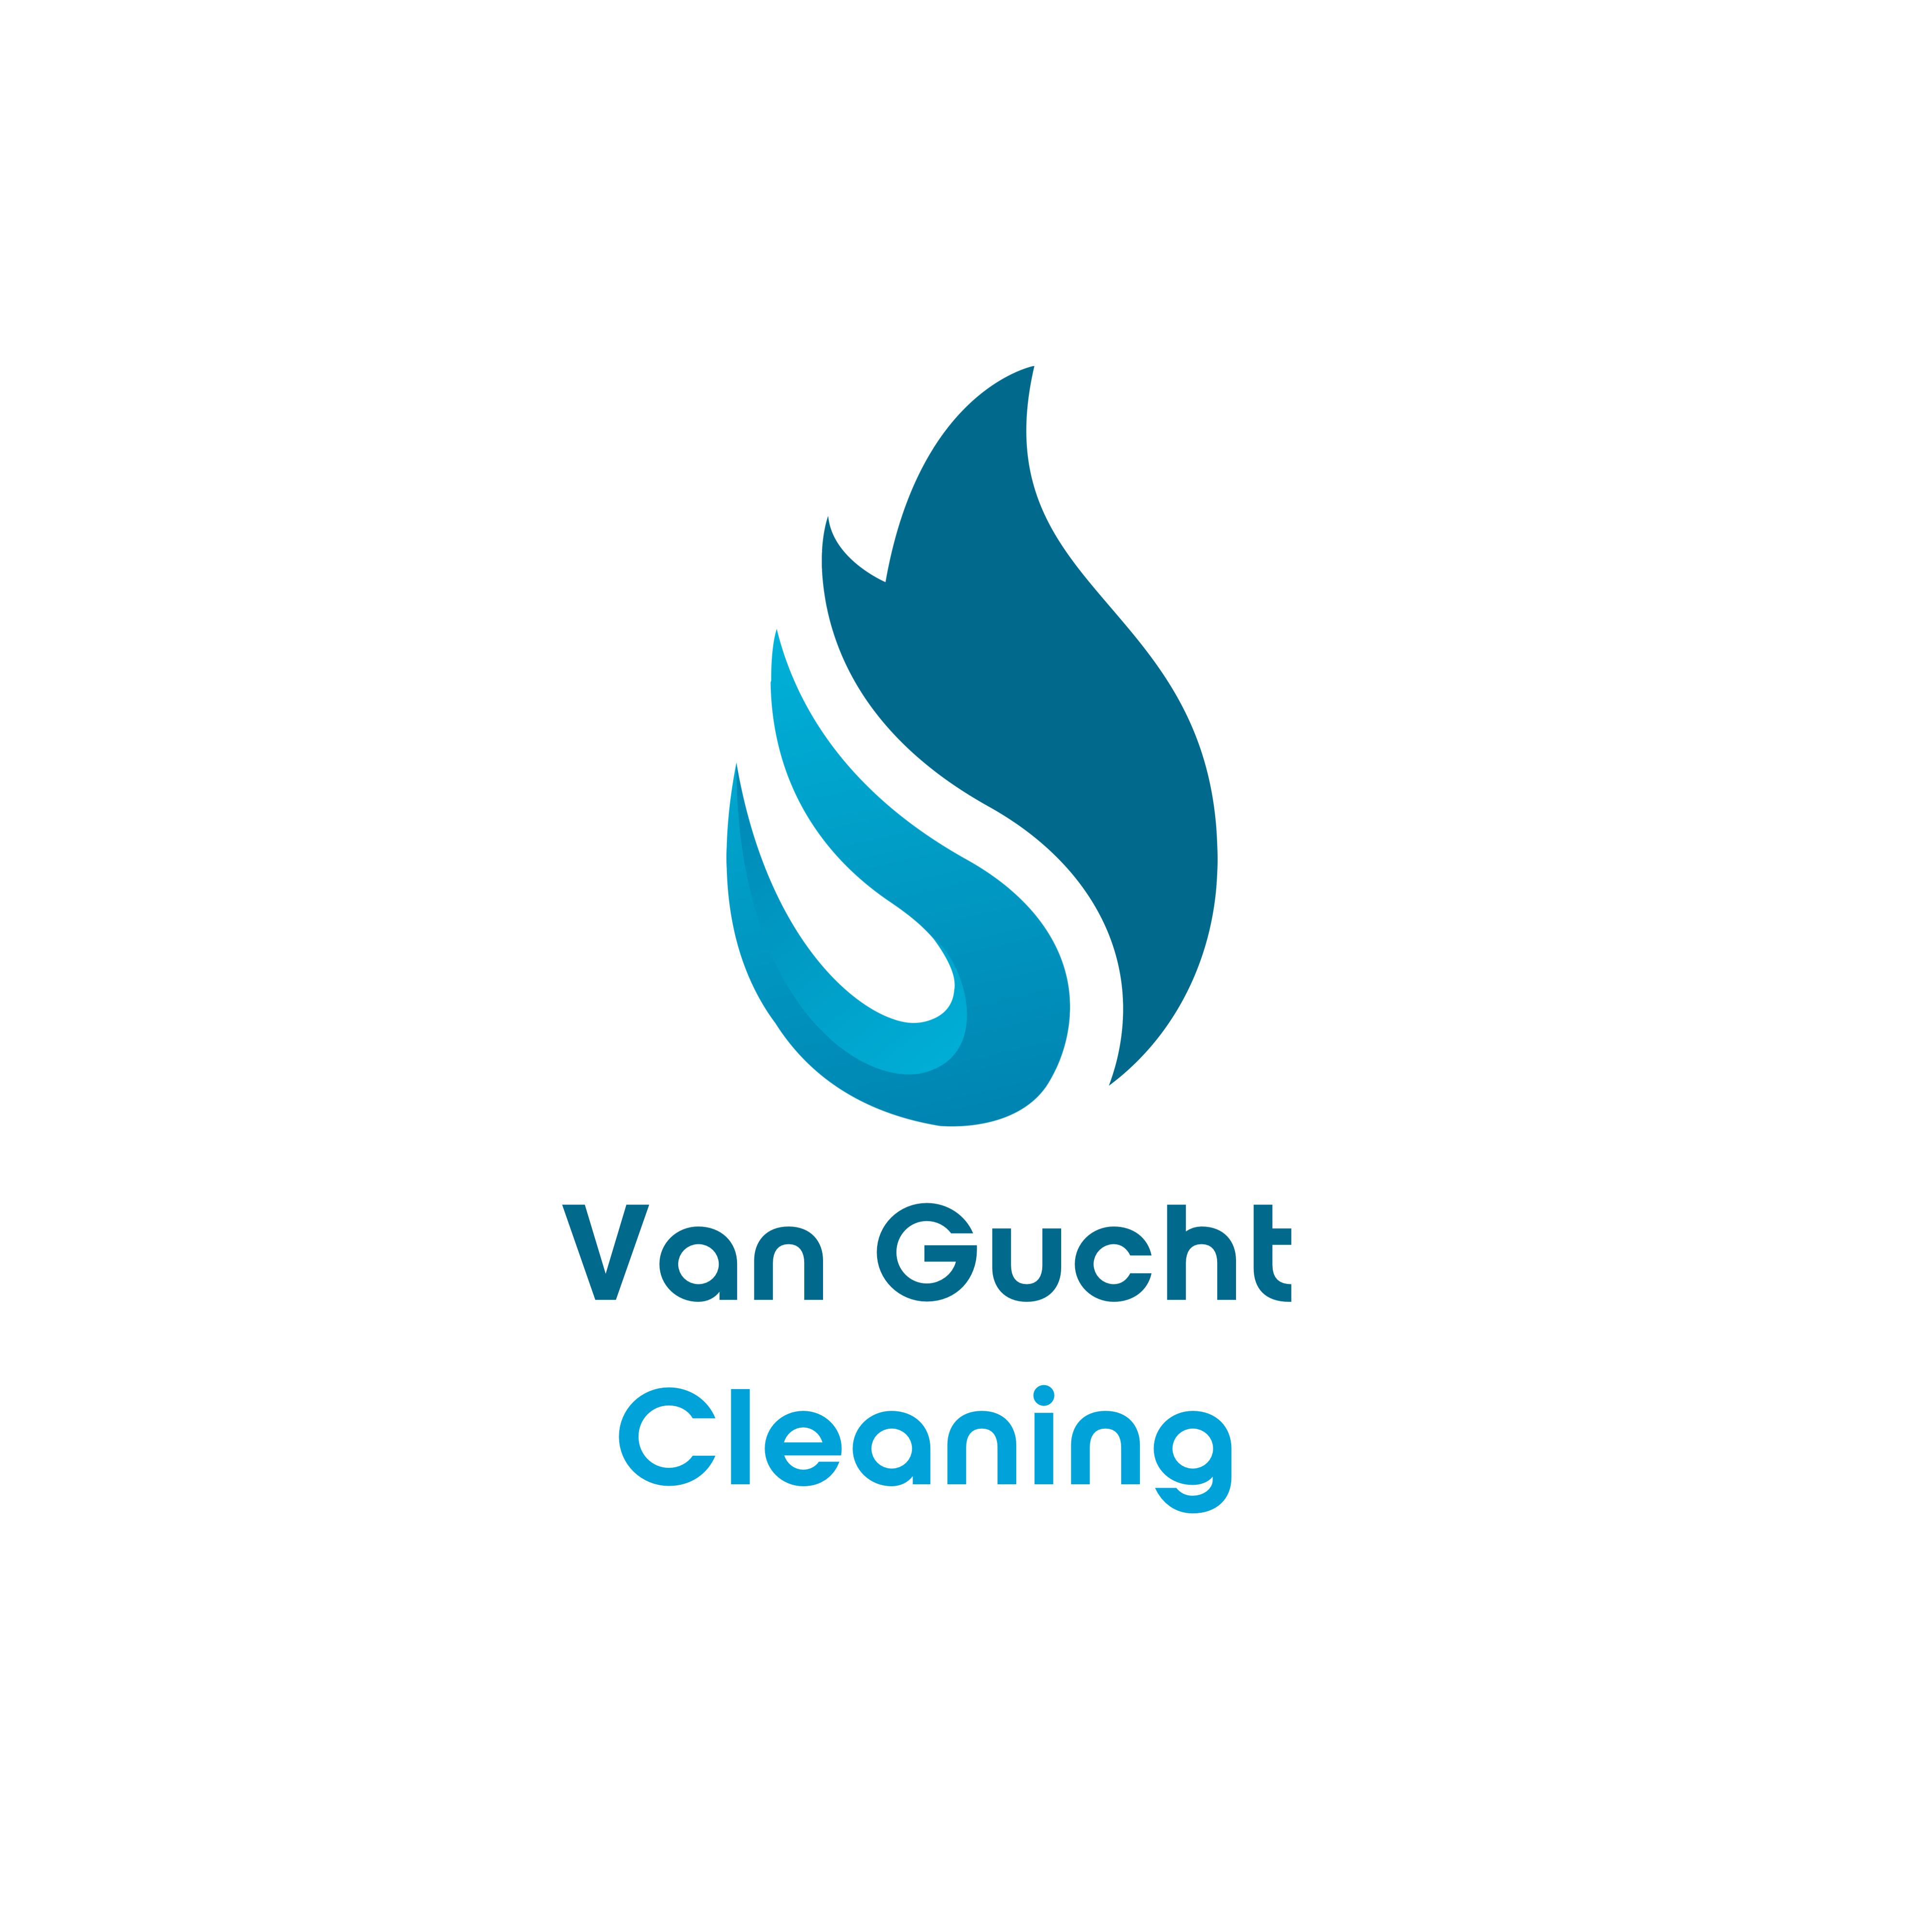 Van Gucht Cleaning